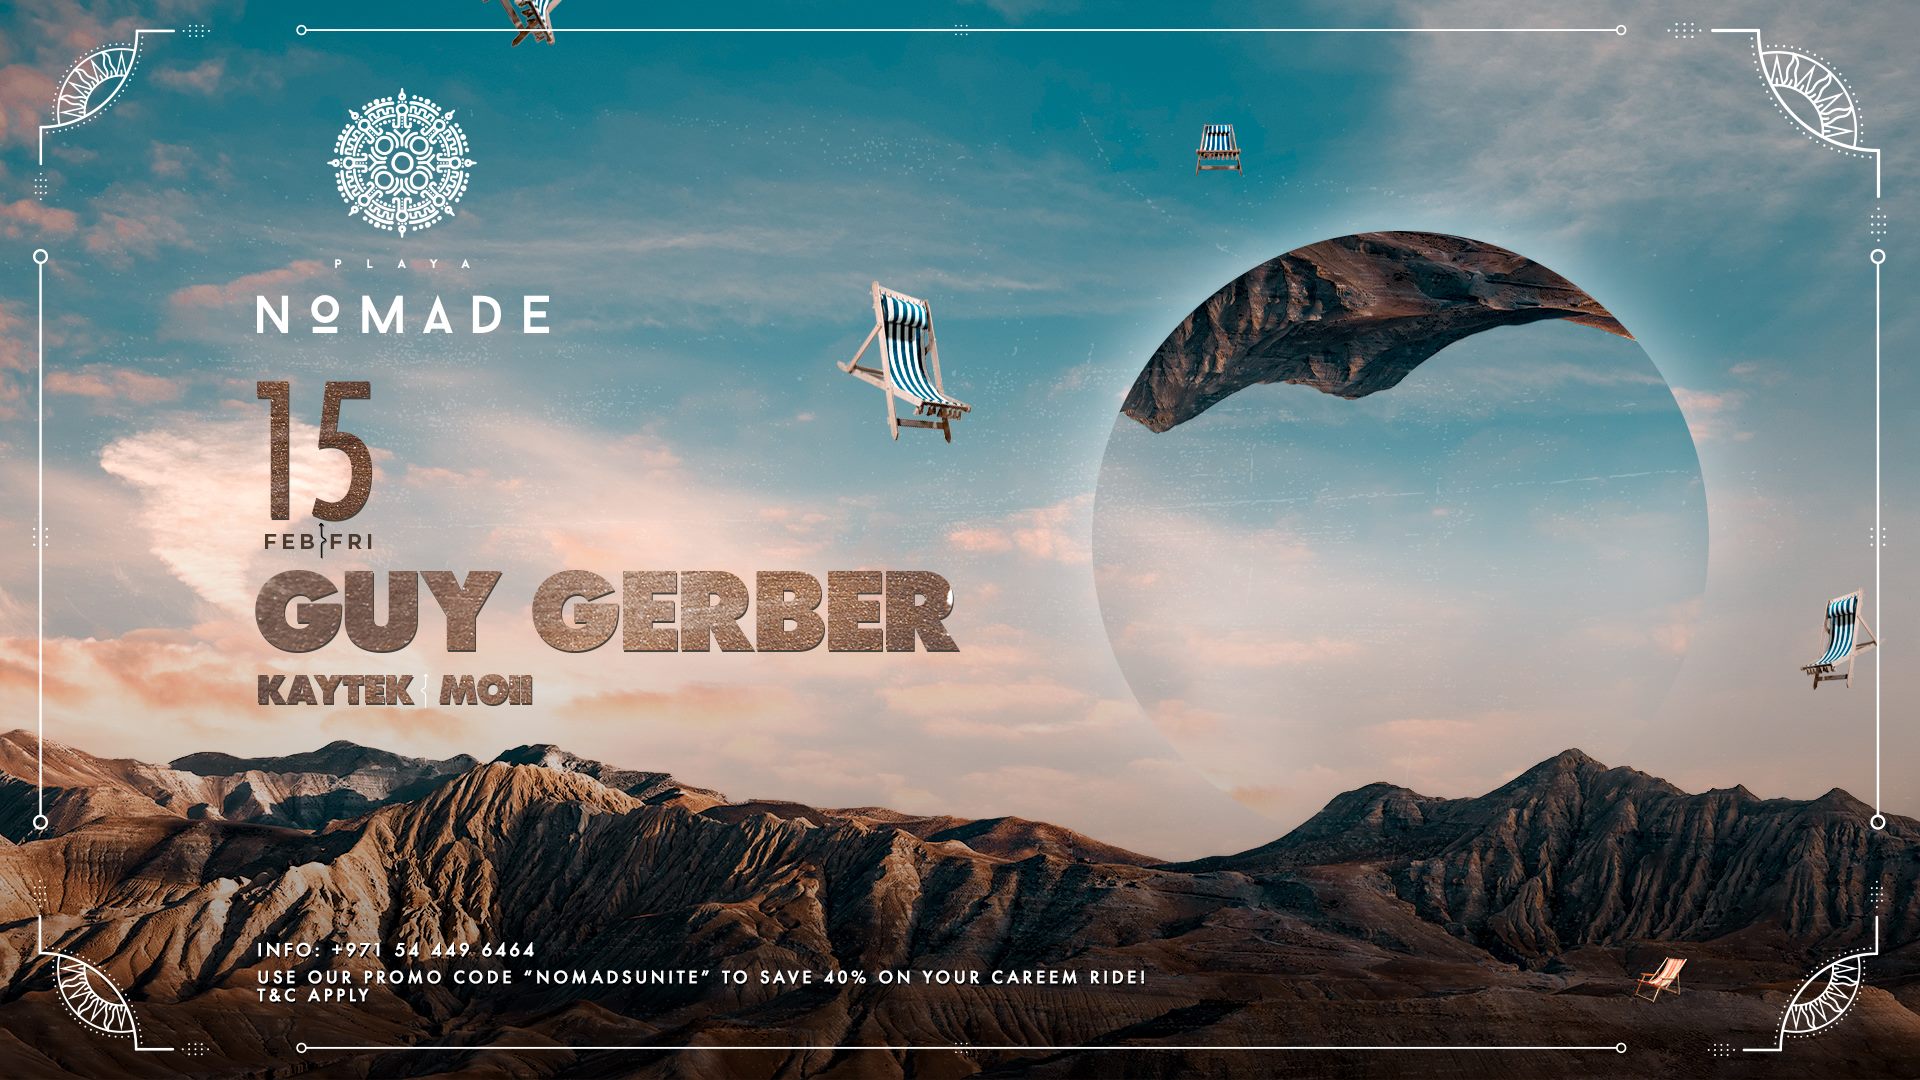 Guy Gerber at Playa Nomade - Coming Soon in UAE